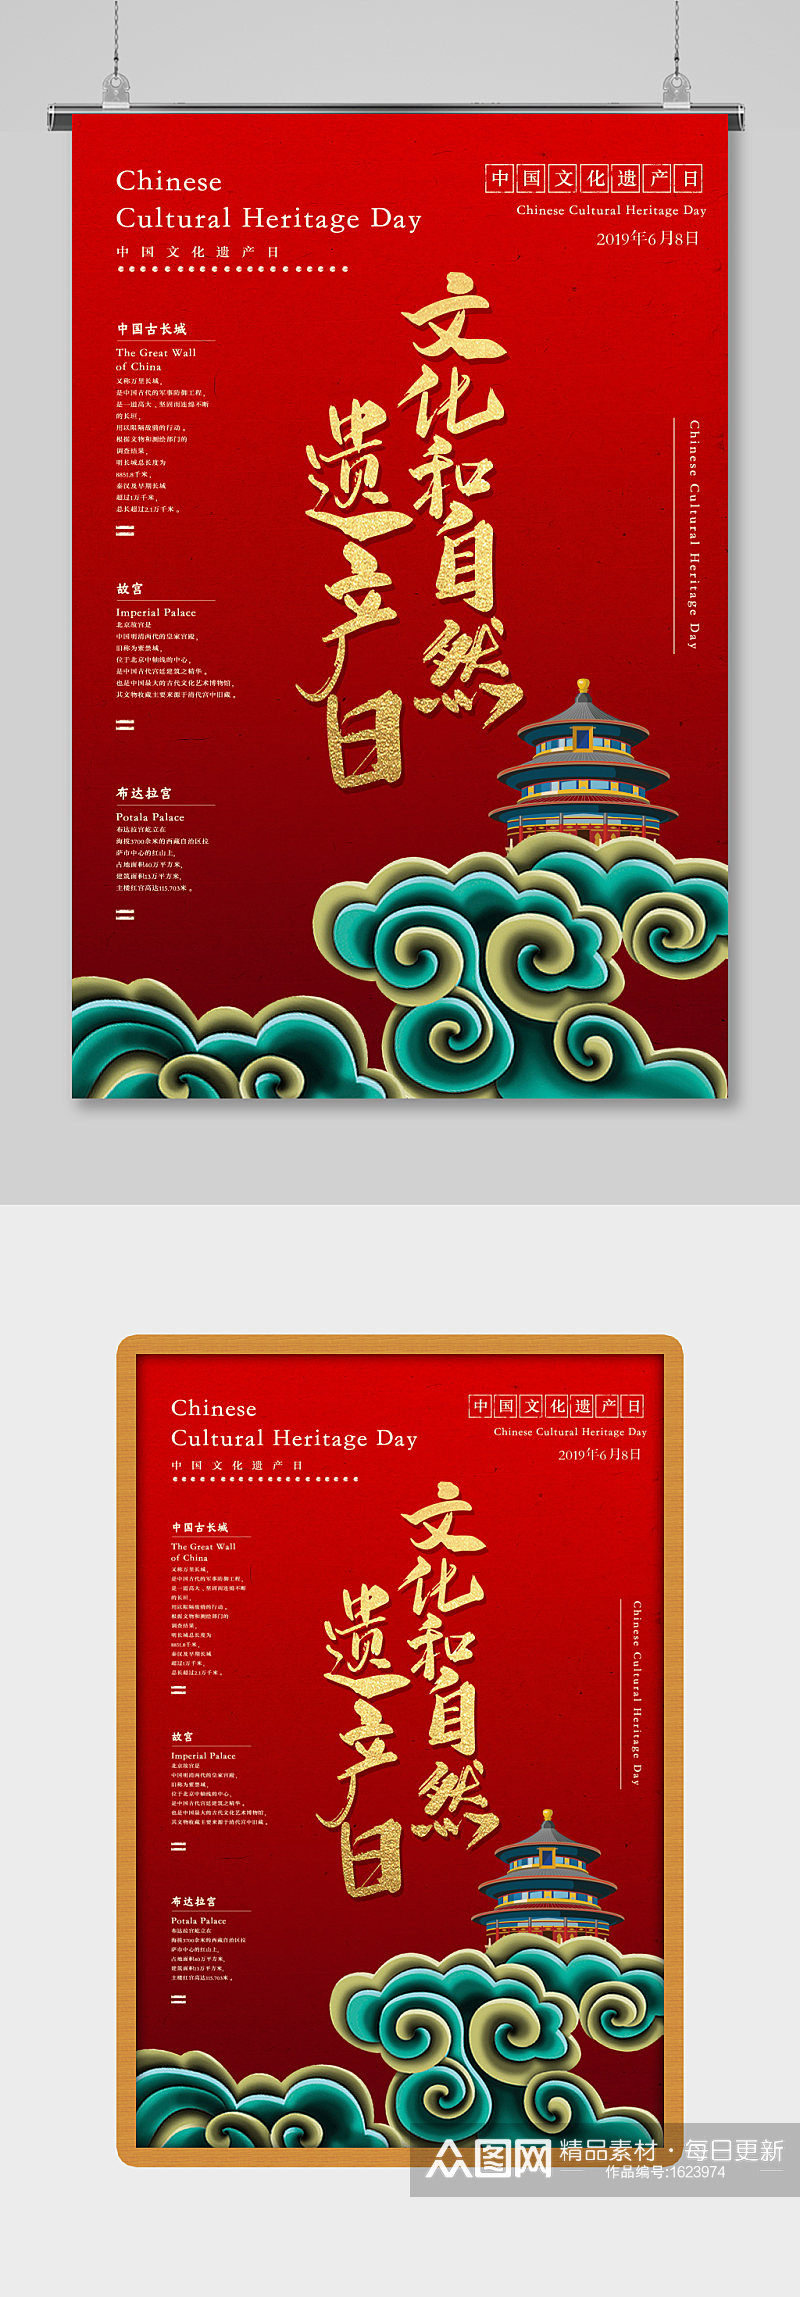 红色古风中国文化遗产日海报素材